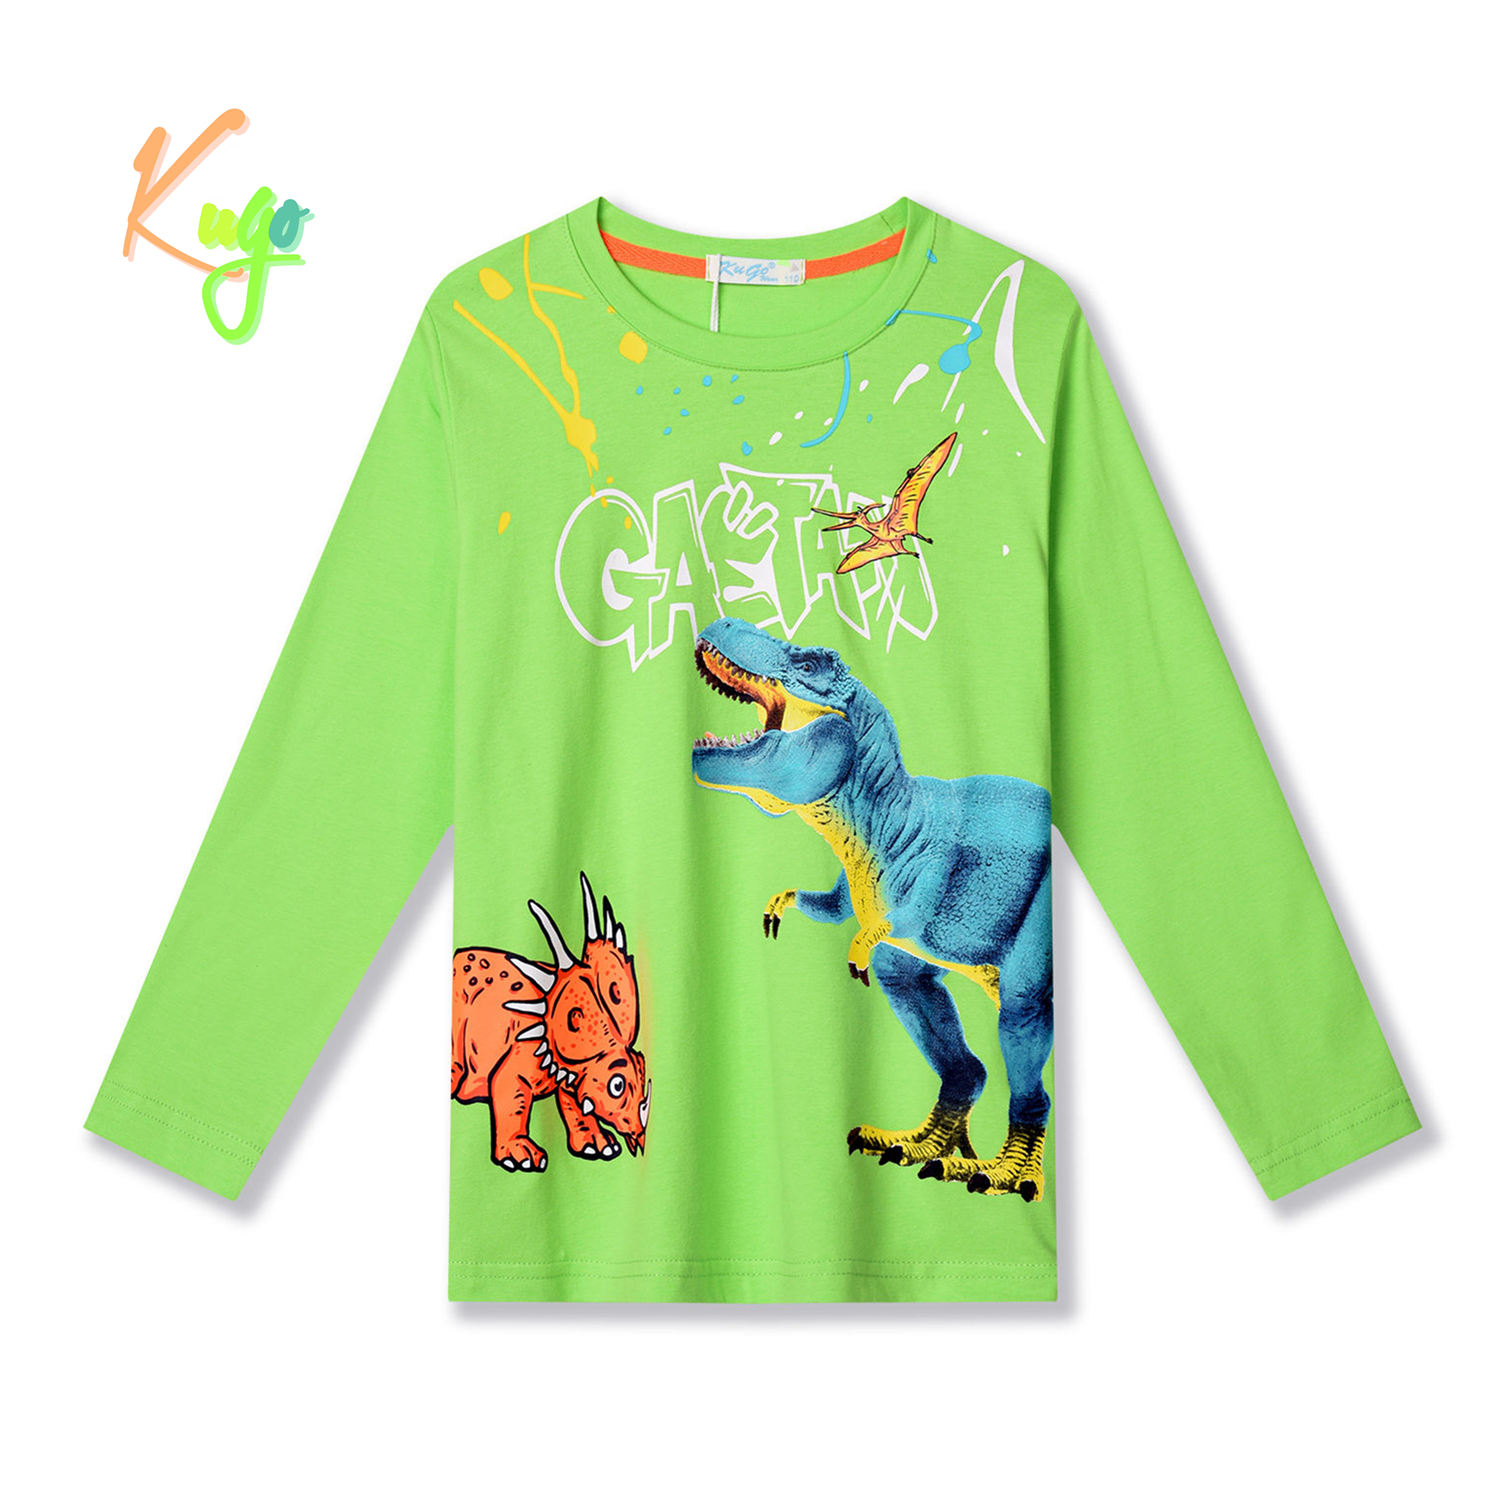 Chlapecké tričko - KUGO HC9307, zelinkavá Barva: Zelená, Velikost: 128